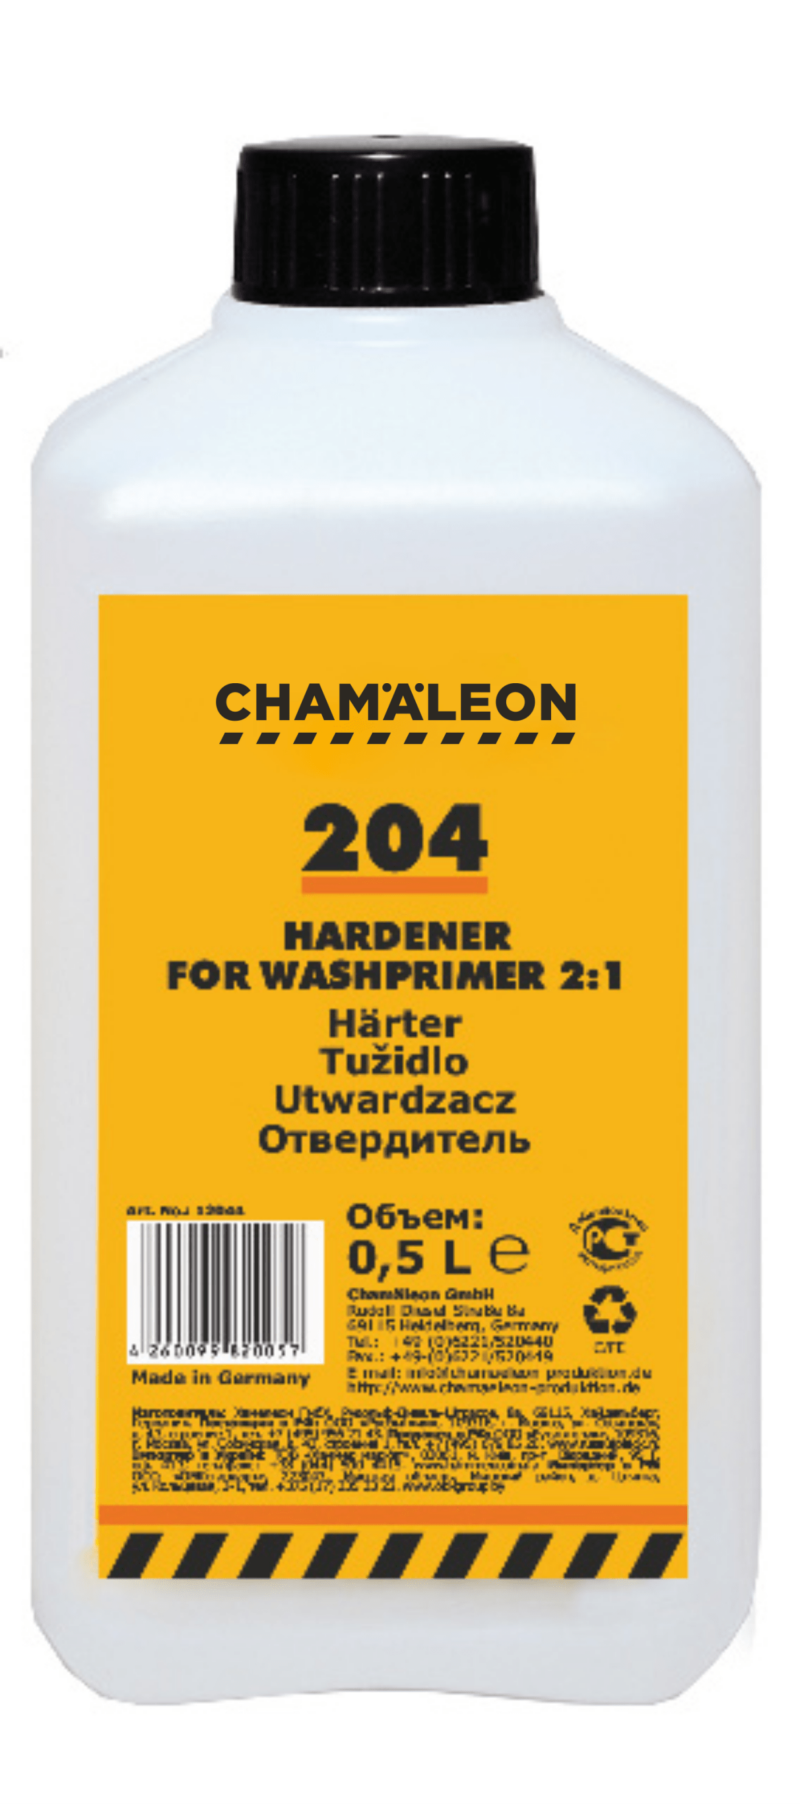 Hardener for Wash primer